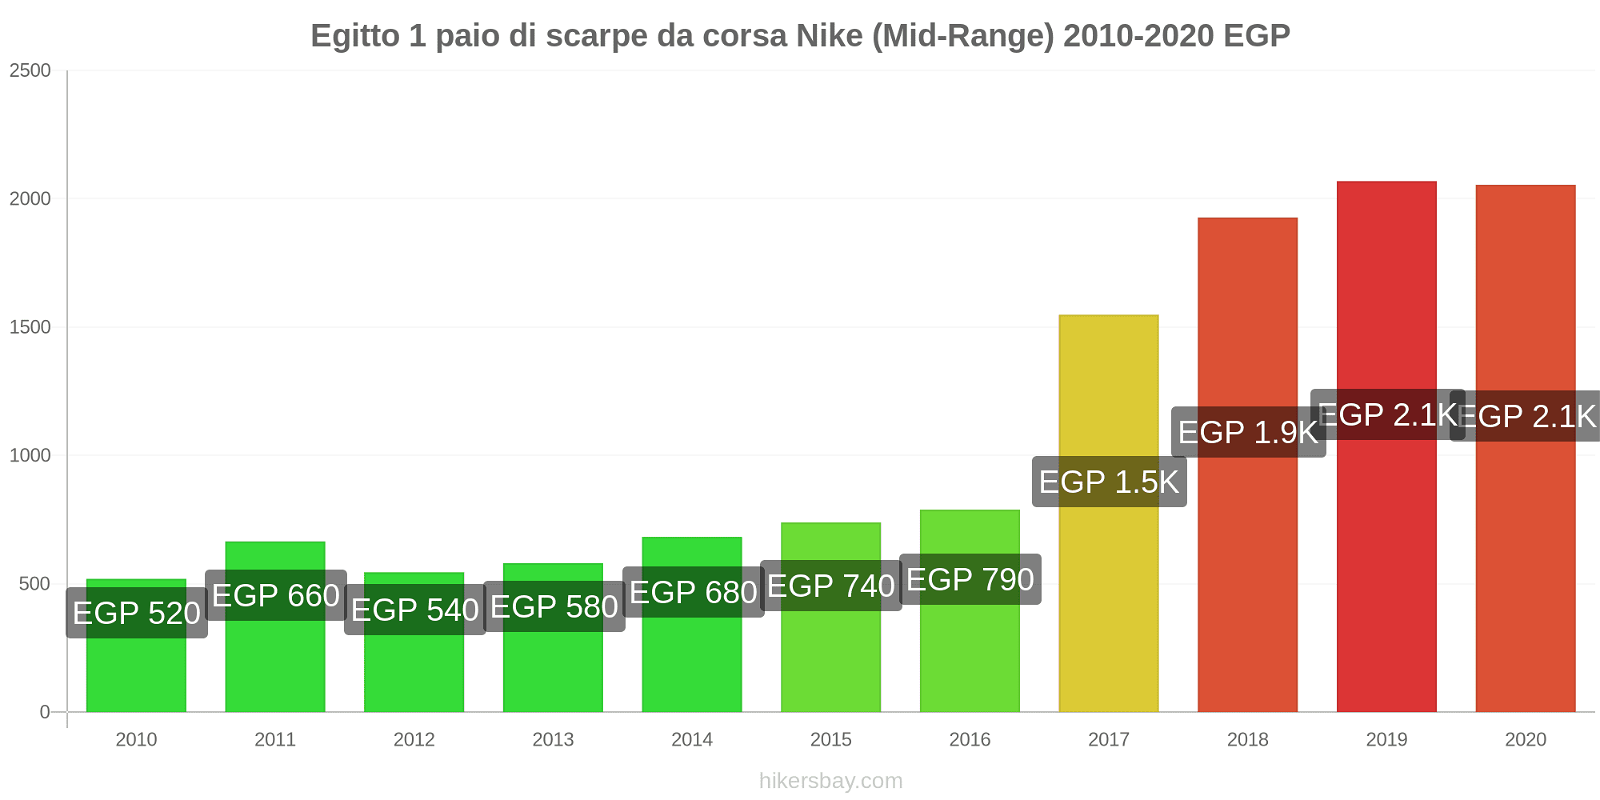 Egitto variazioni di prezzo 1 paio di scarpe da corsa Nike (simile) hikersbay.com